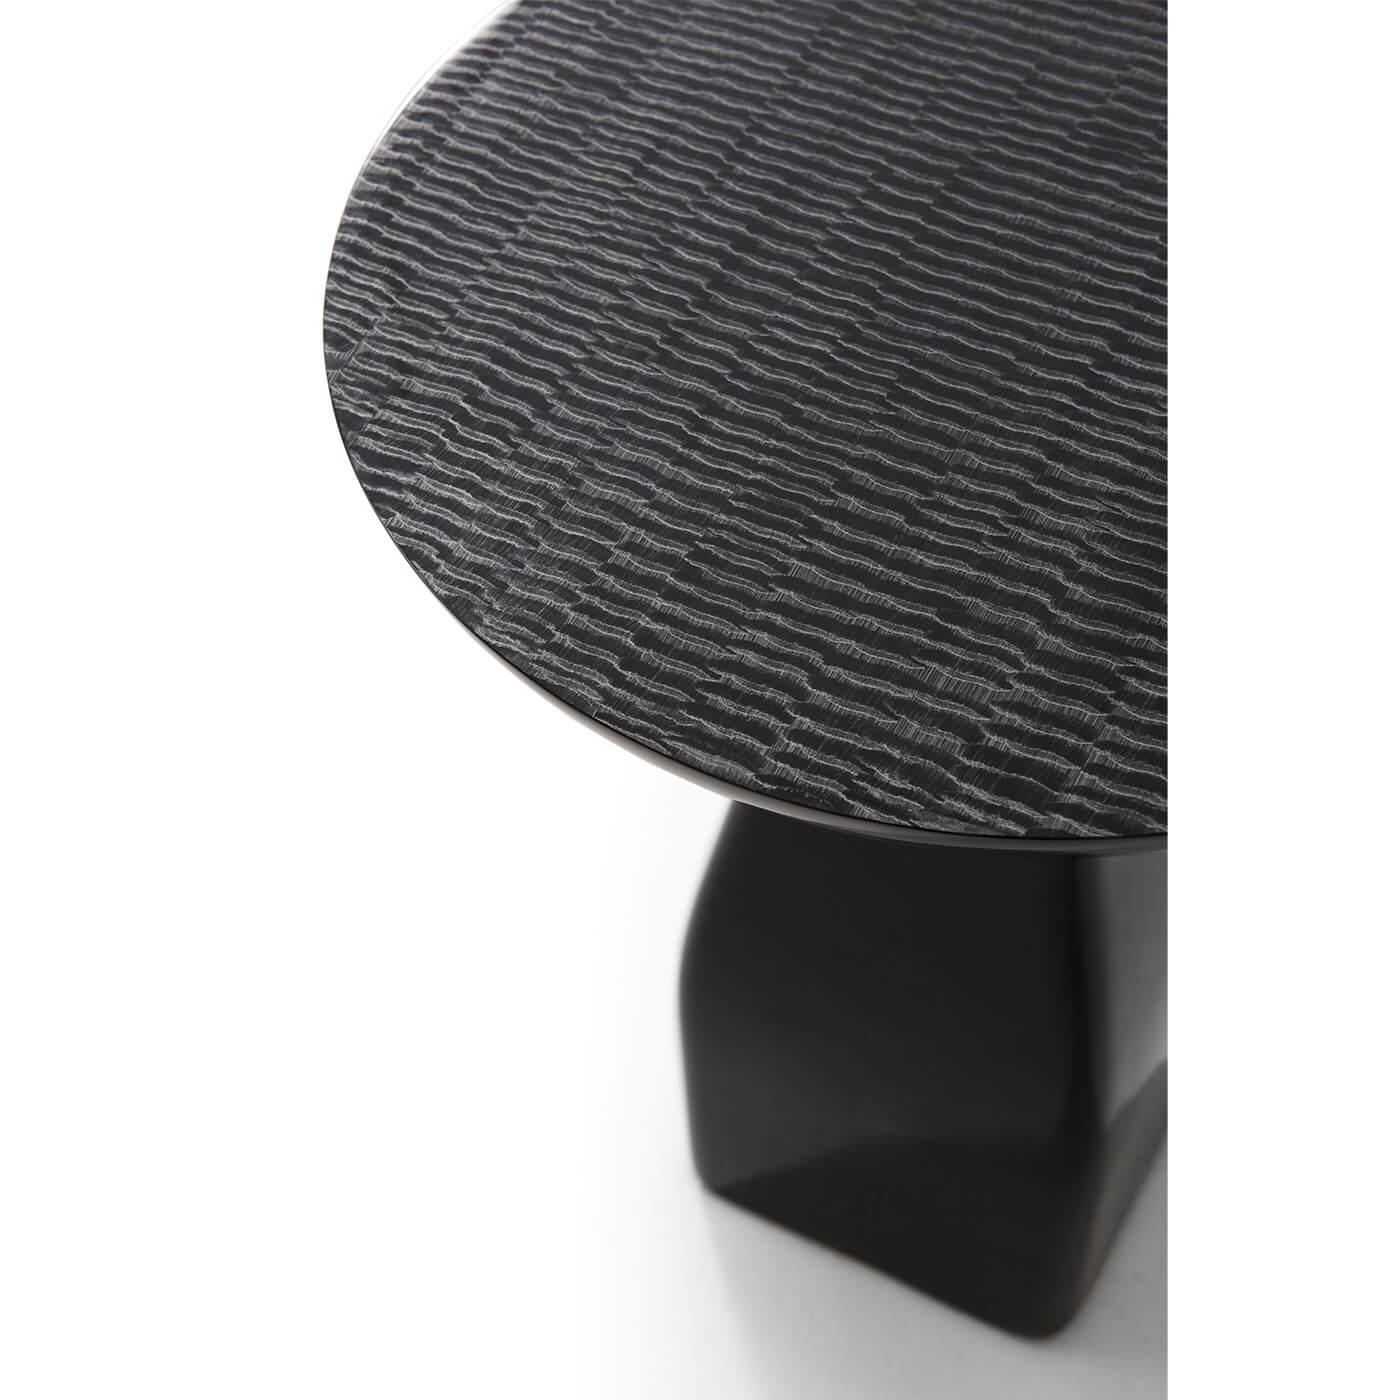 Ein Lacksockel-Akzenttisch mit versilberter, gemusterter und ausgestellter runder Platte über einem quadratischen Sockel.

Abmessungen: 19,75